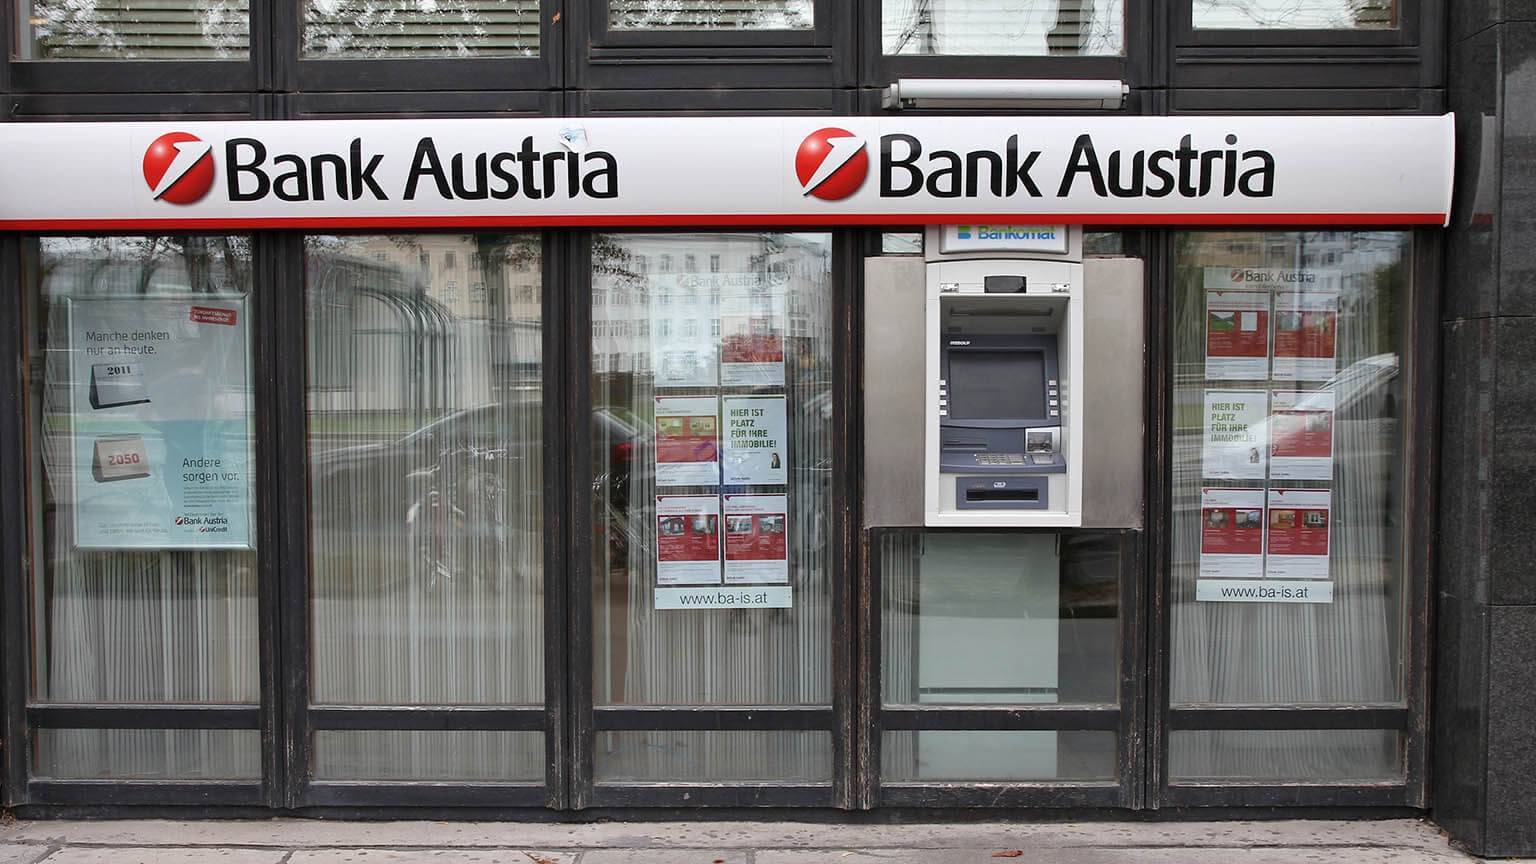 Перевести деньги в австрию из россии - все способы и сравнение комиссии систем денежных переводов, тарифы 2022